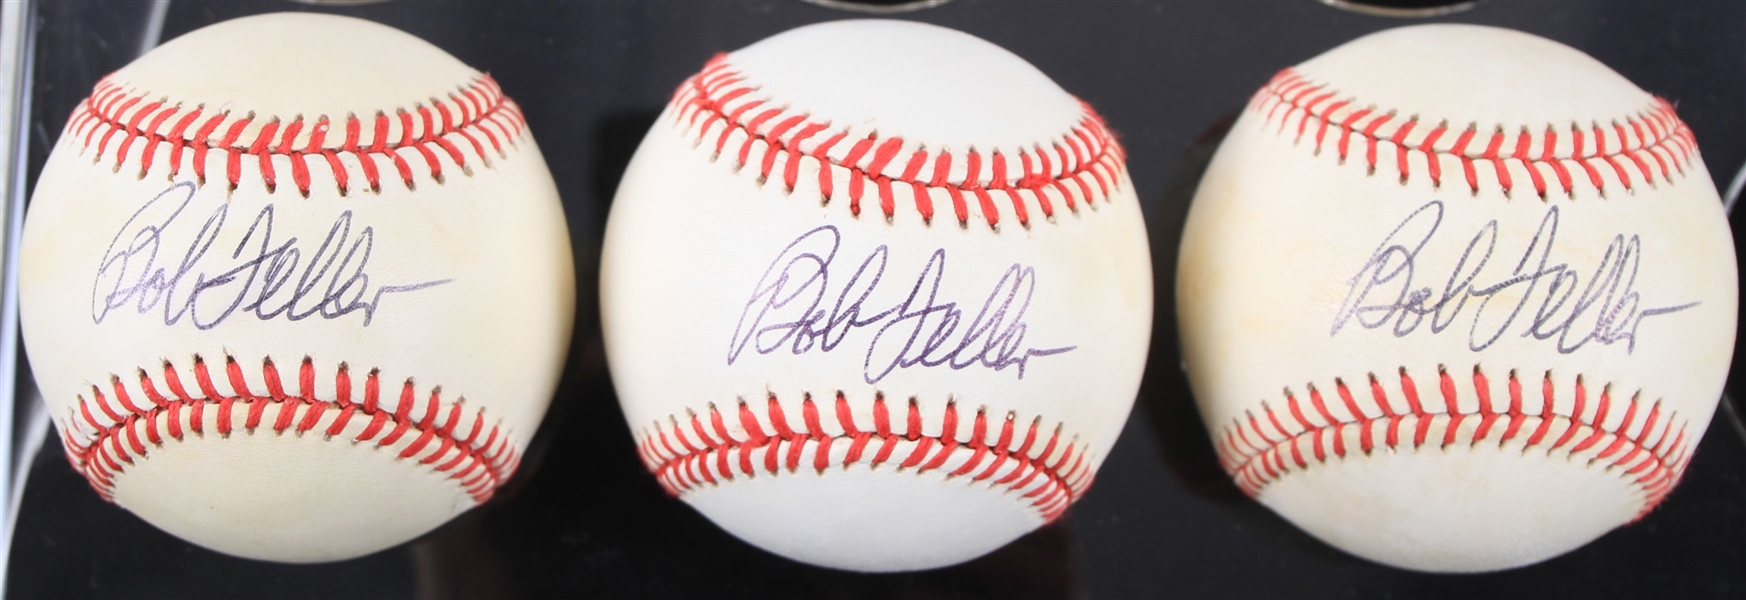 1990-92 Bob Feller Cleveland Indians Signed OAL Brown Baseballs - Lot of 3 (JSA)